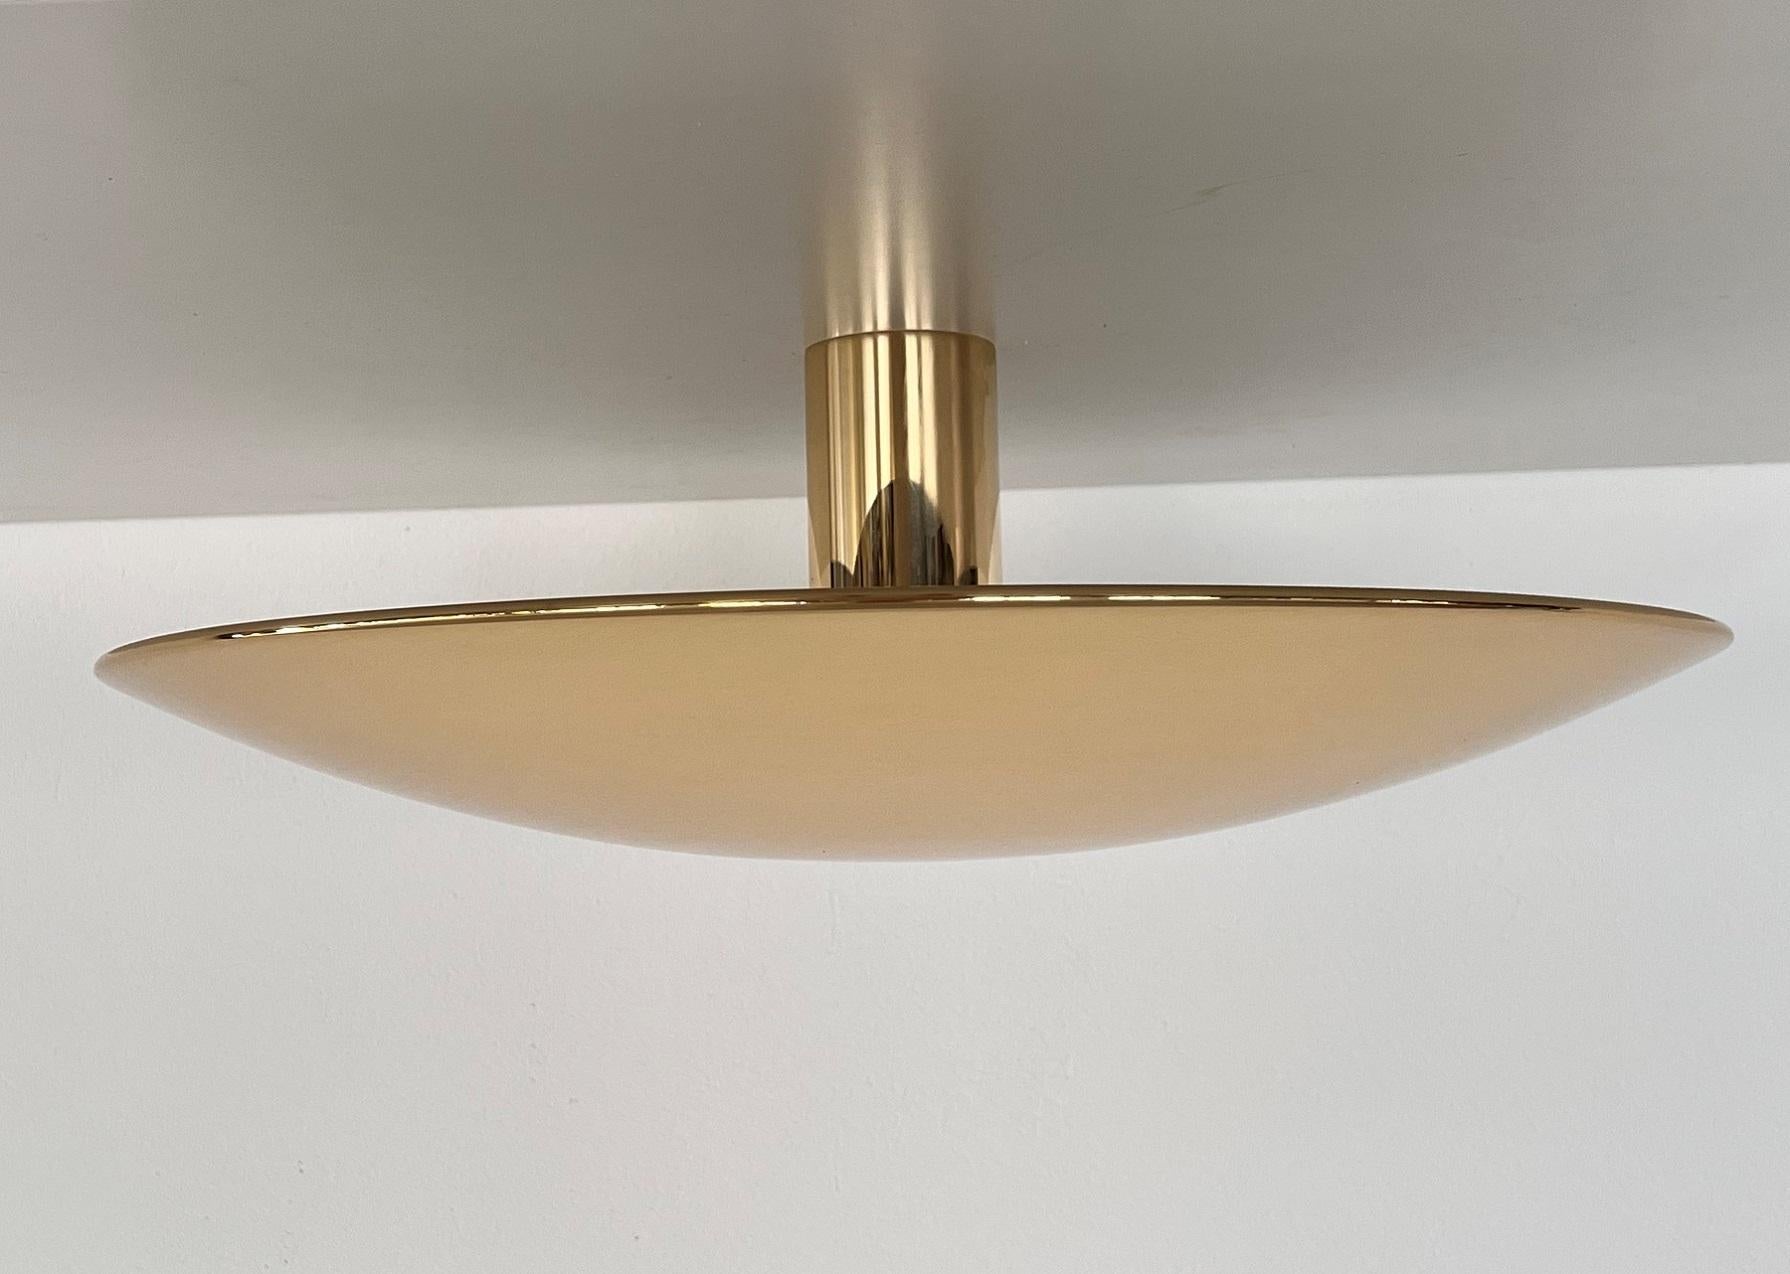 Polished Florian Schulz Modernist large Flush Mount Light in polished Brass, 1970s